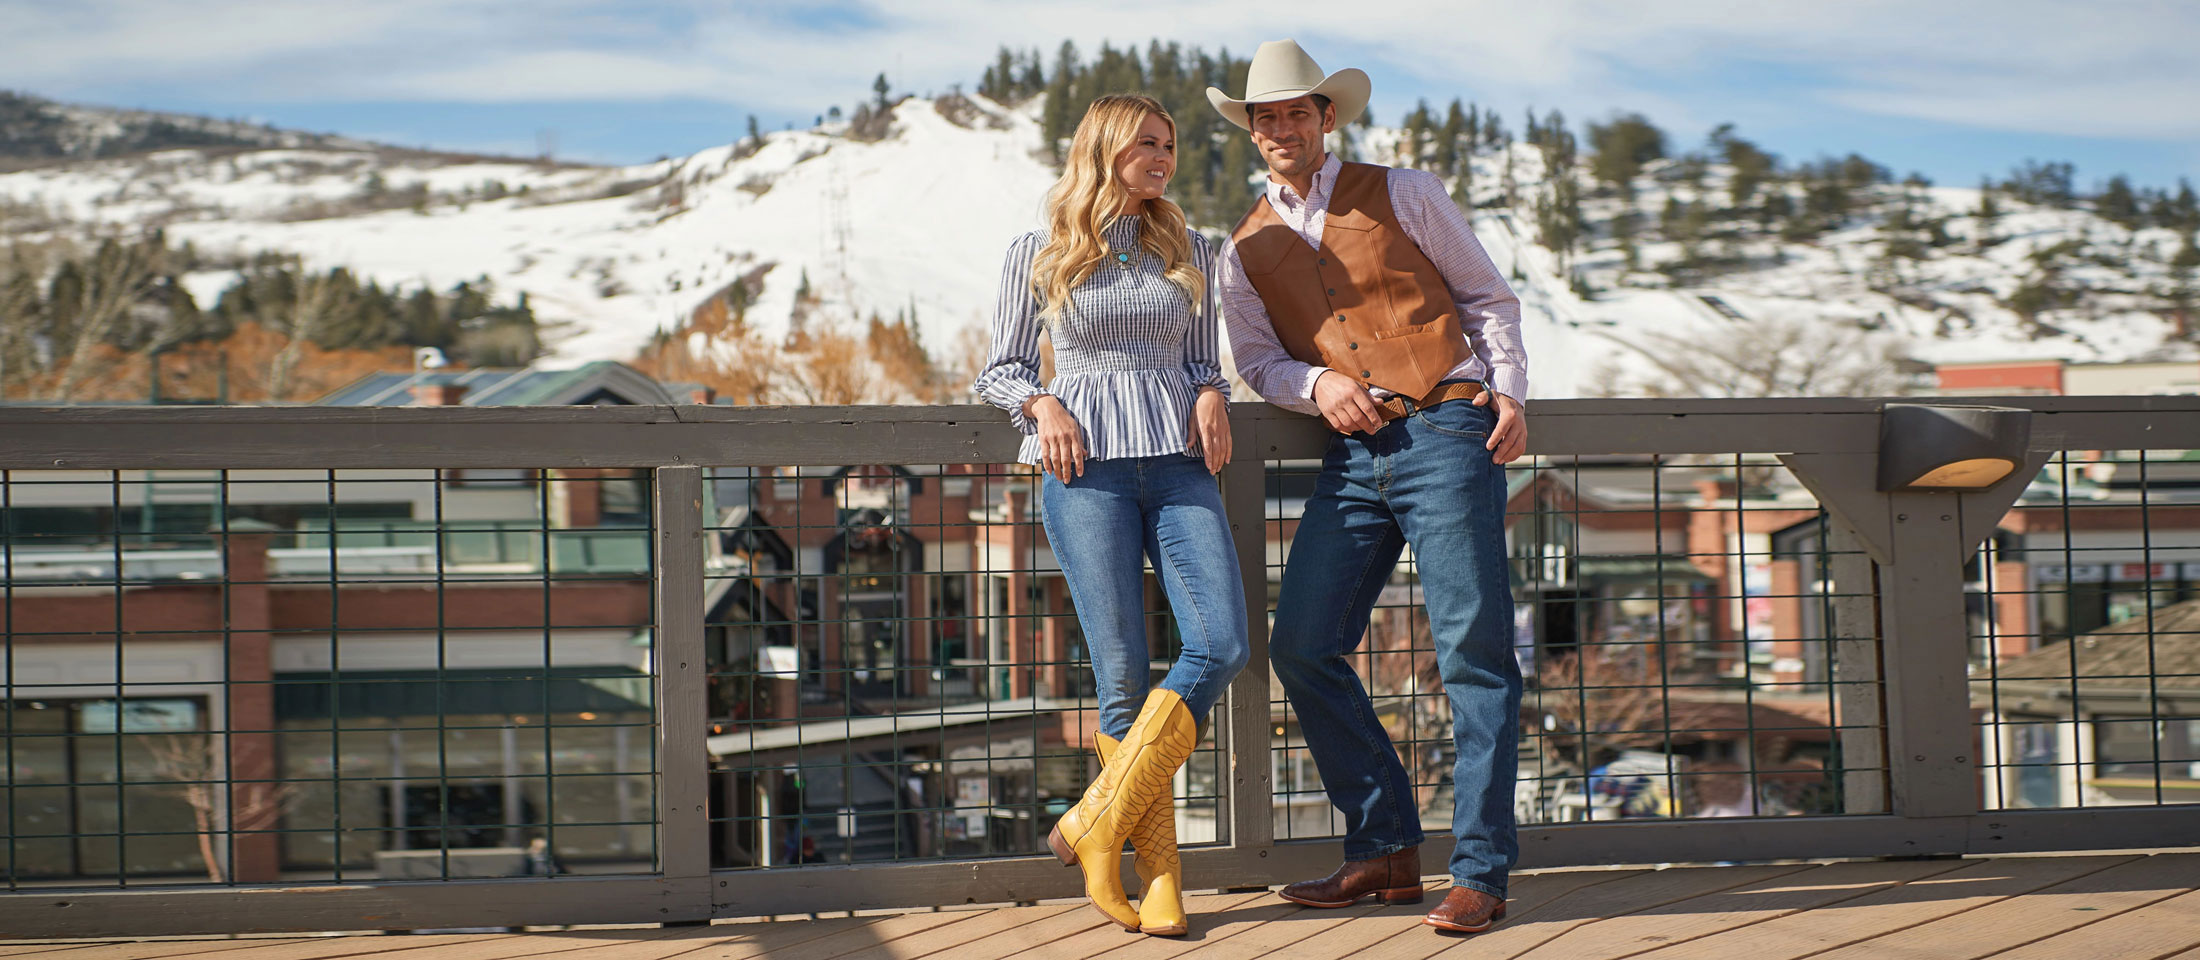 Un hombre y una mujer de pie en un patio con botas de vaquero. La mujer viste camisa blusa y jeans mientras que el hombre viste camisa, chaleco, jeans y sombrero de vaquero.